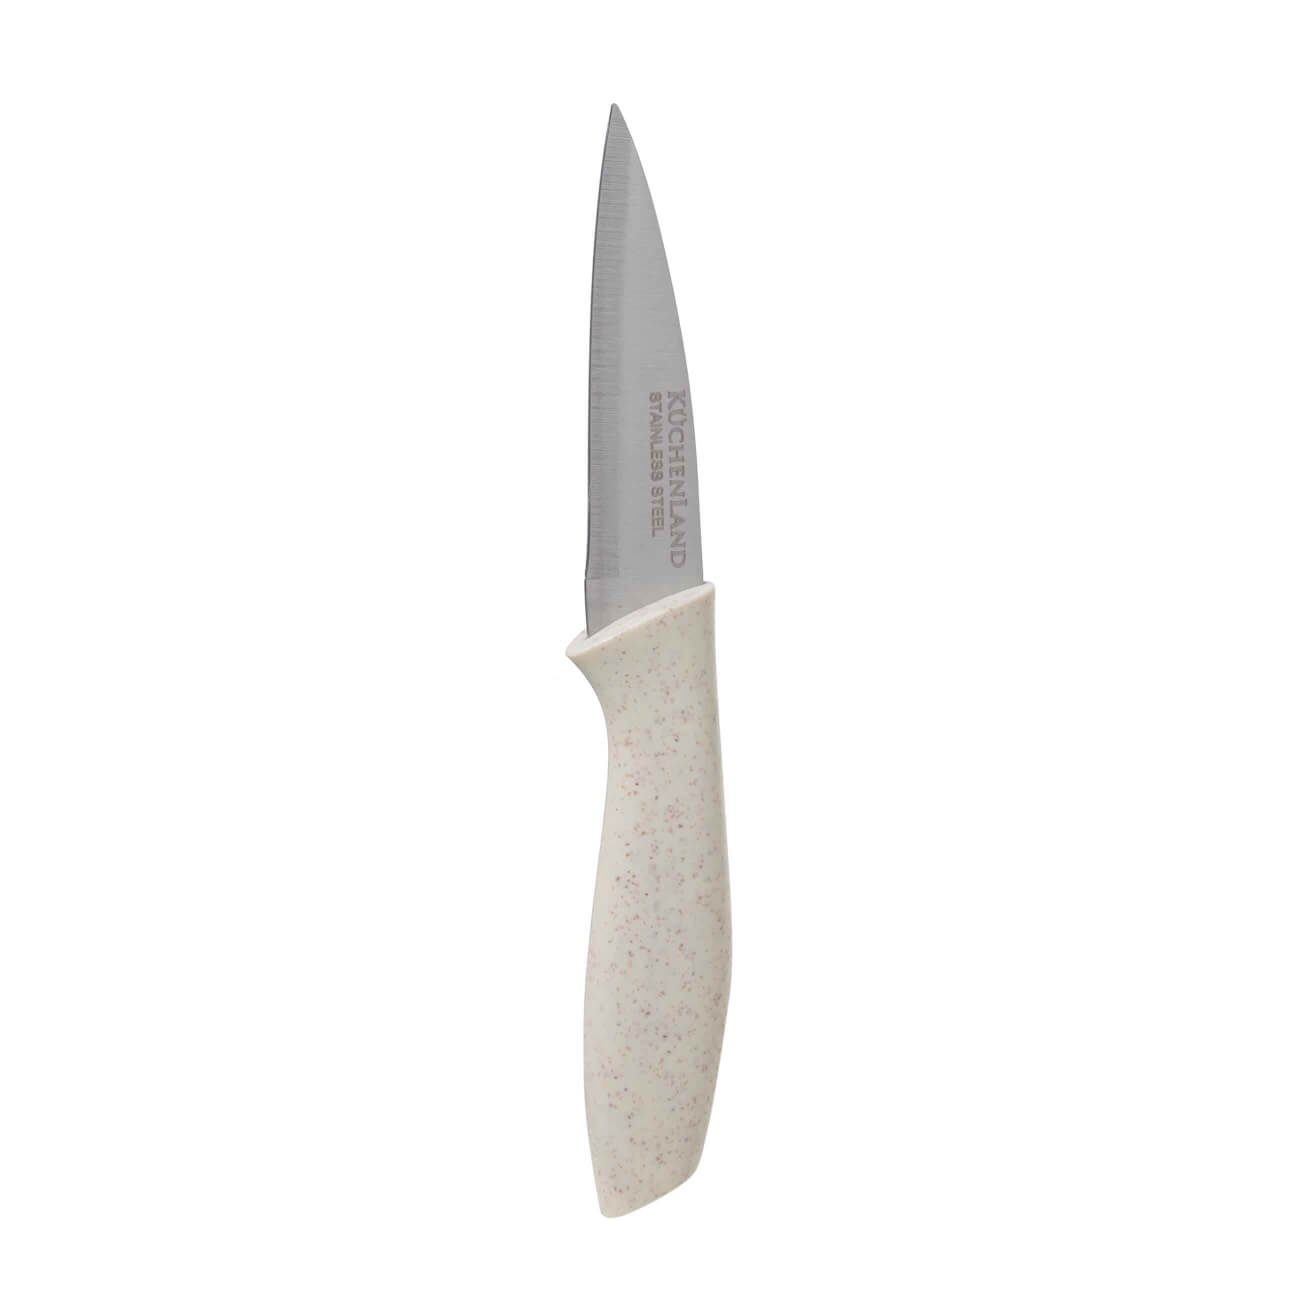 Нож для чистки овощей, 9 см, сталь/пластик, молочный, Speck-light нож для резки овощей mallony